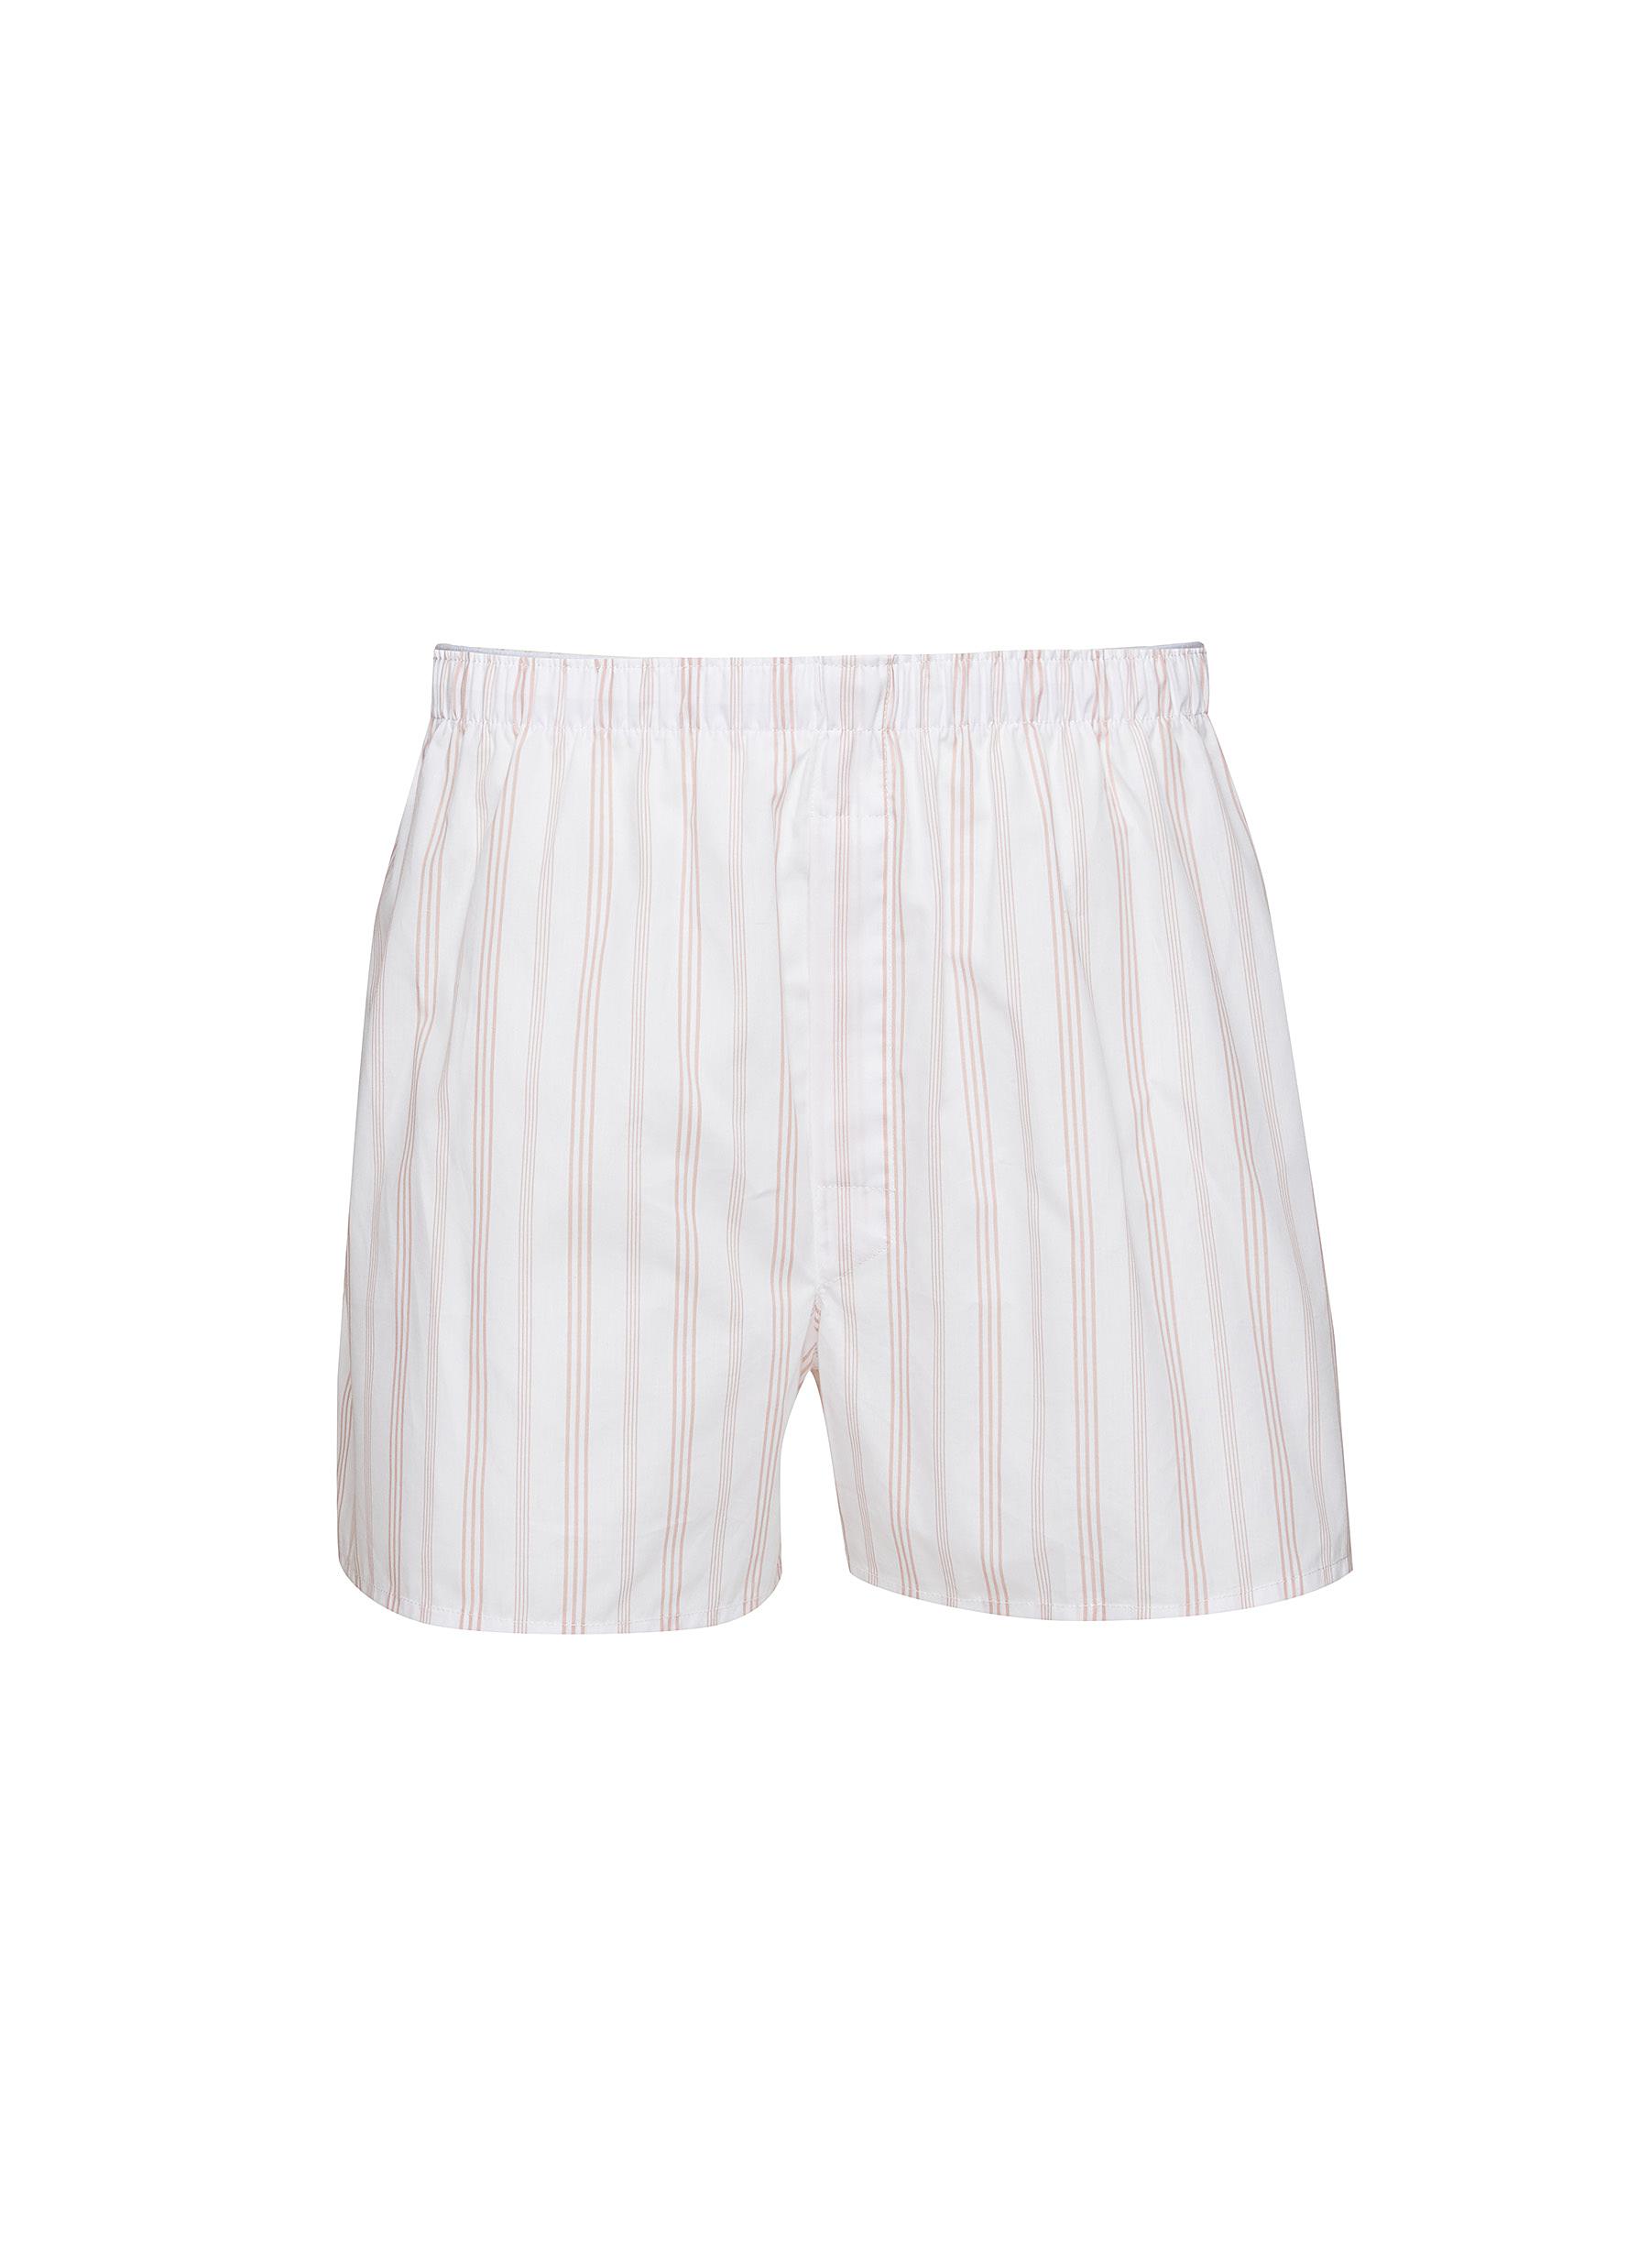 Stripe Cotton Boxer Shorts